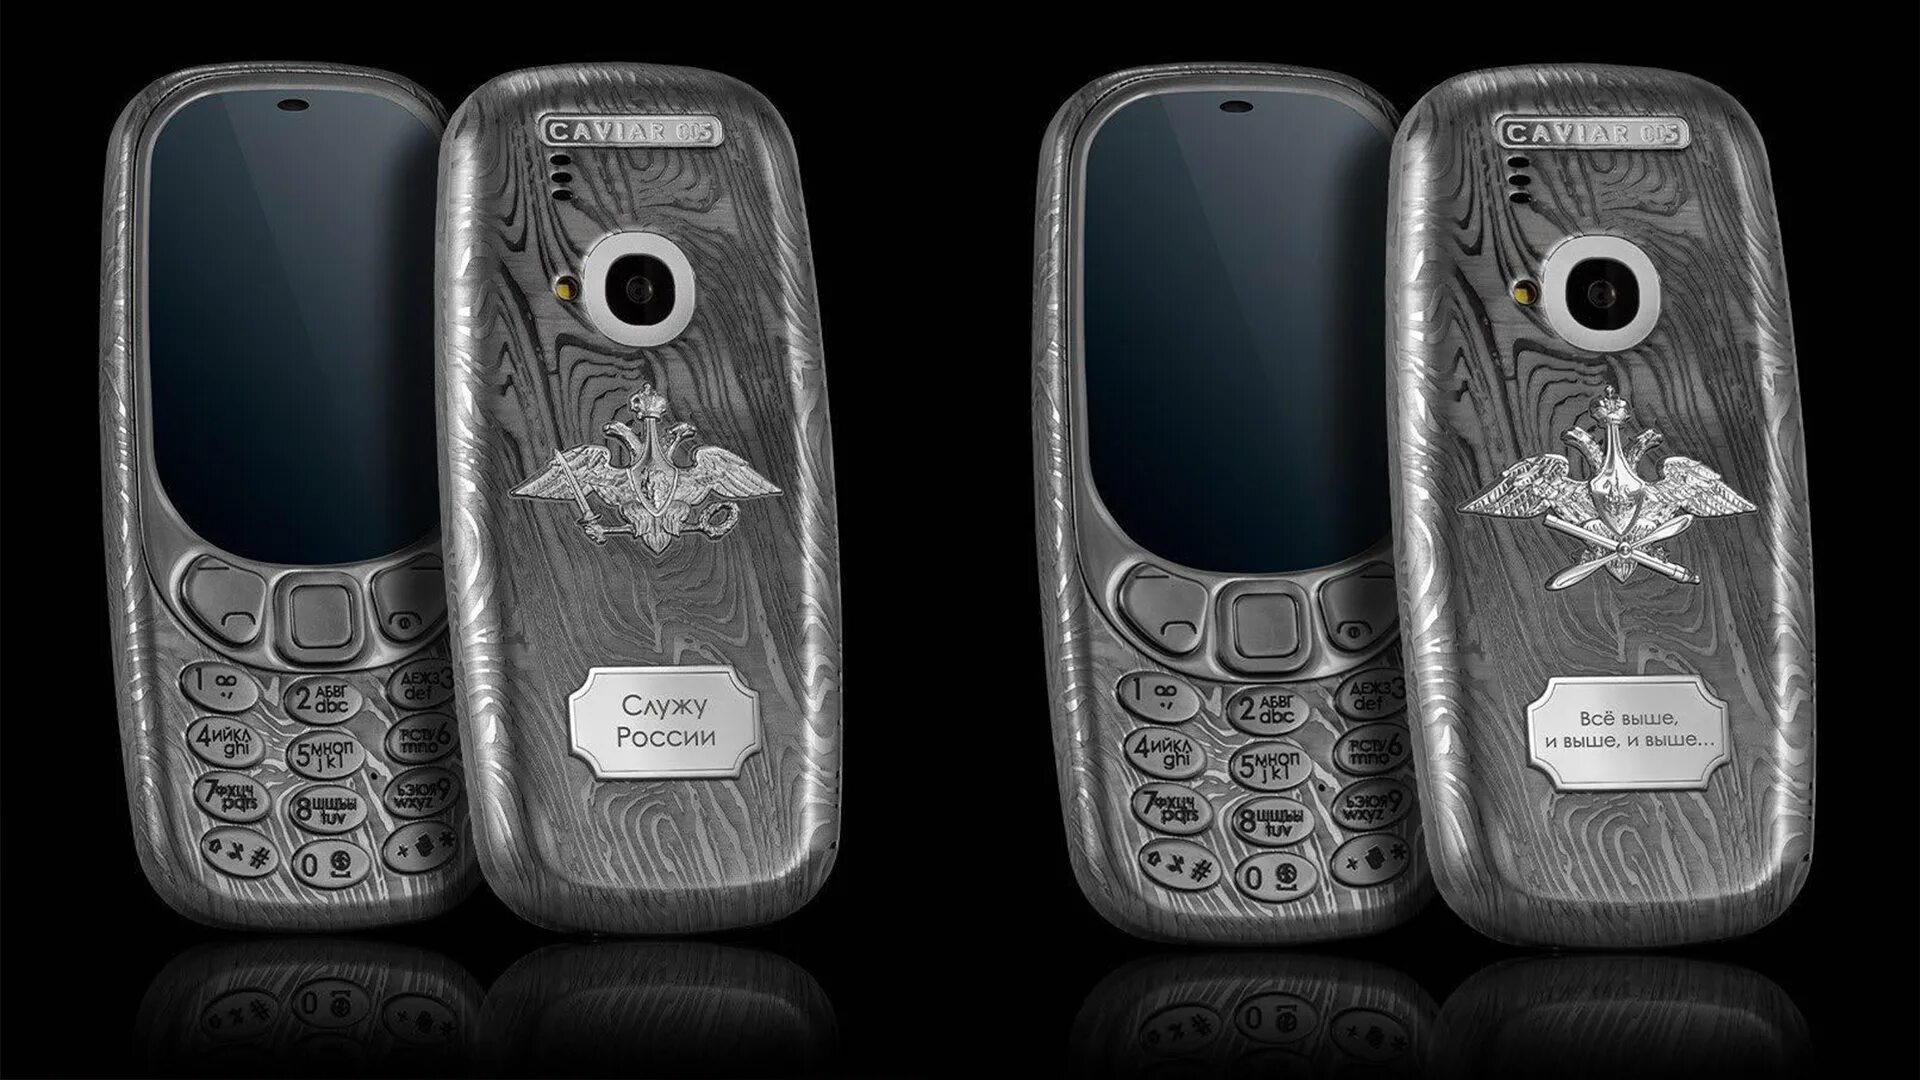 Кавиар нокиа 3310. Нокиа 3310 в титановом корпусе. Caviar Nokia. Российский сотовый телефон для военных.